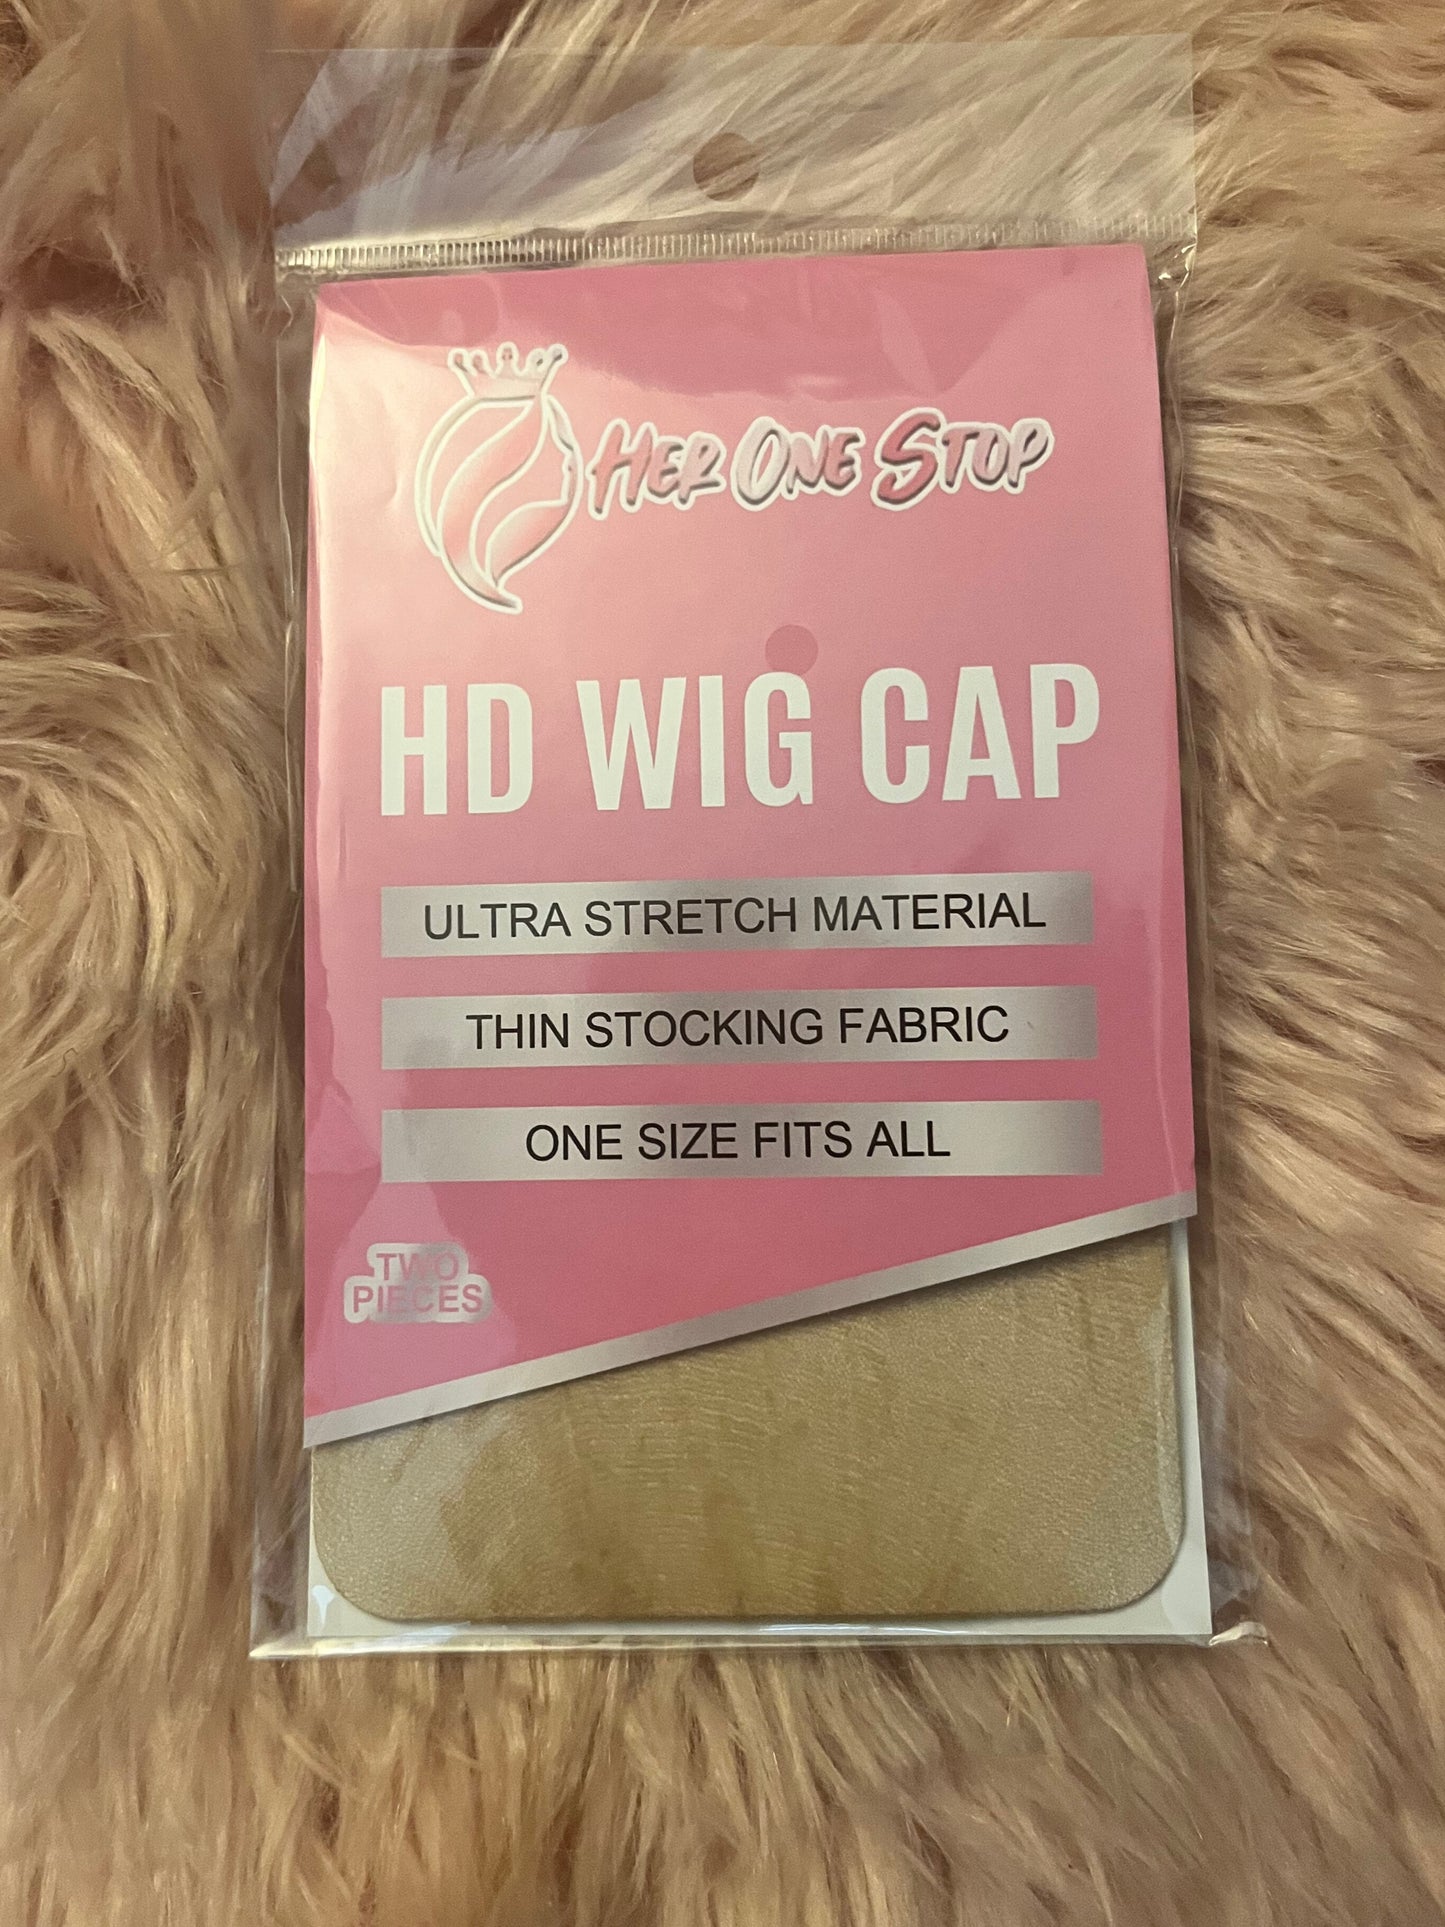 HD Wig Cap - Her One Stop LLC 